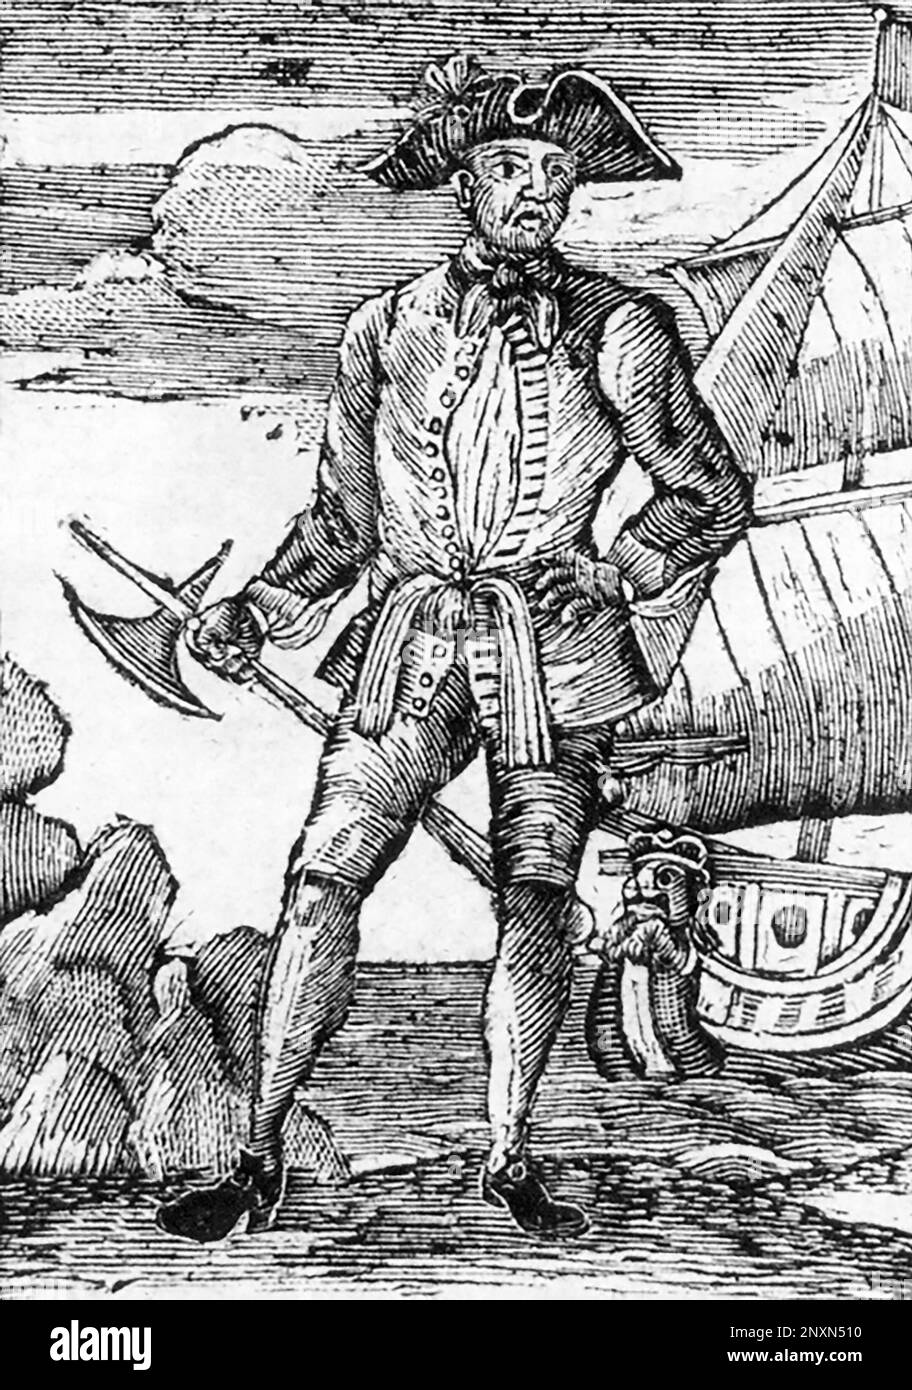 Edward England (ca. 1685-1721) war ein irischer Pirat. Illustration aus der Geschichte und dem Leben der berüchtigtsten Piraten und ihrer Crews, 1725. Stockfoto